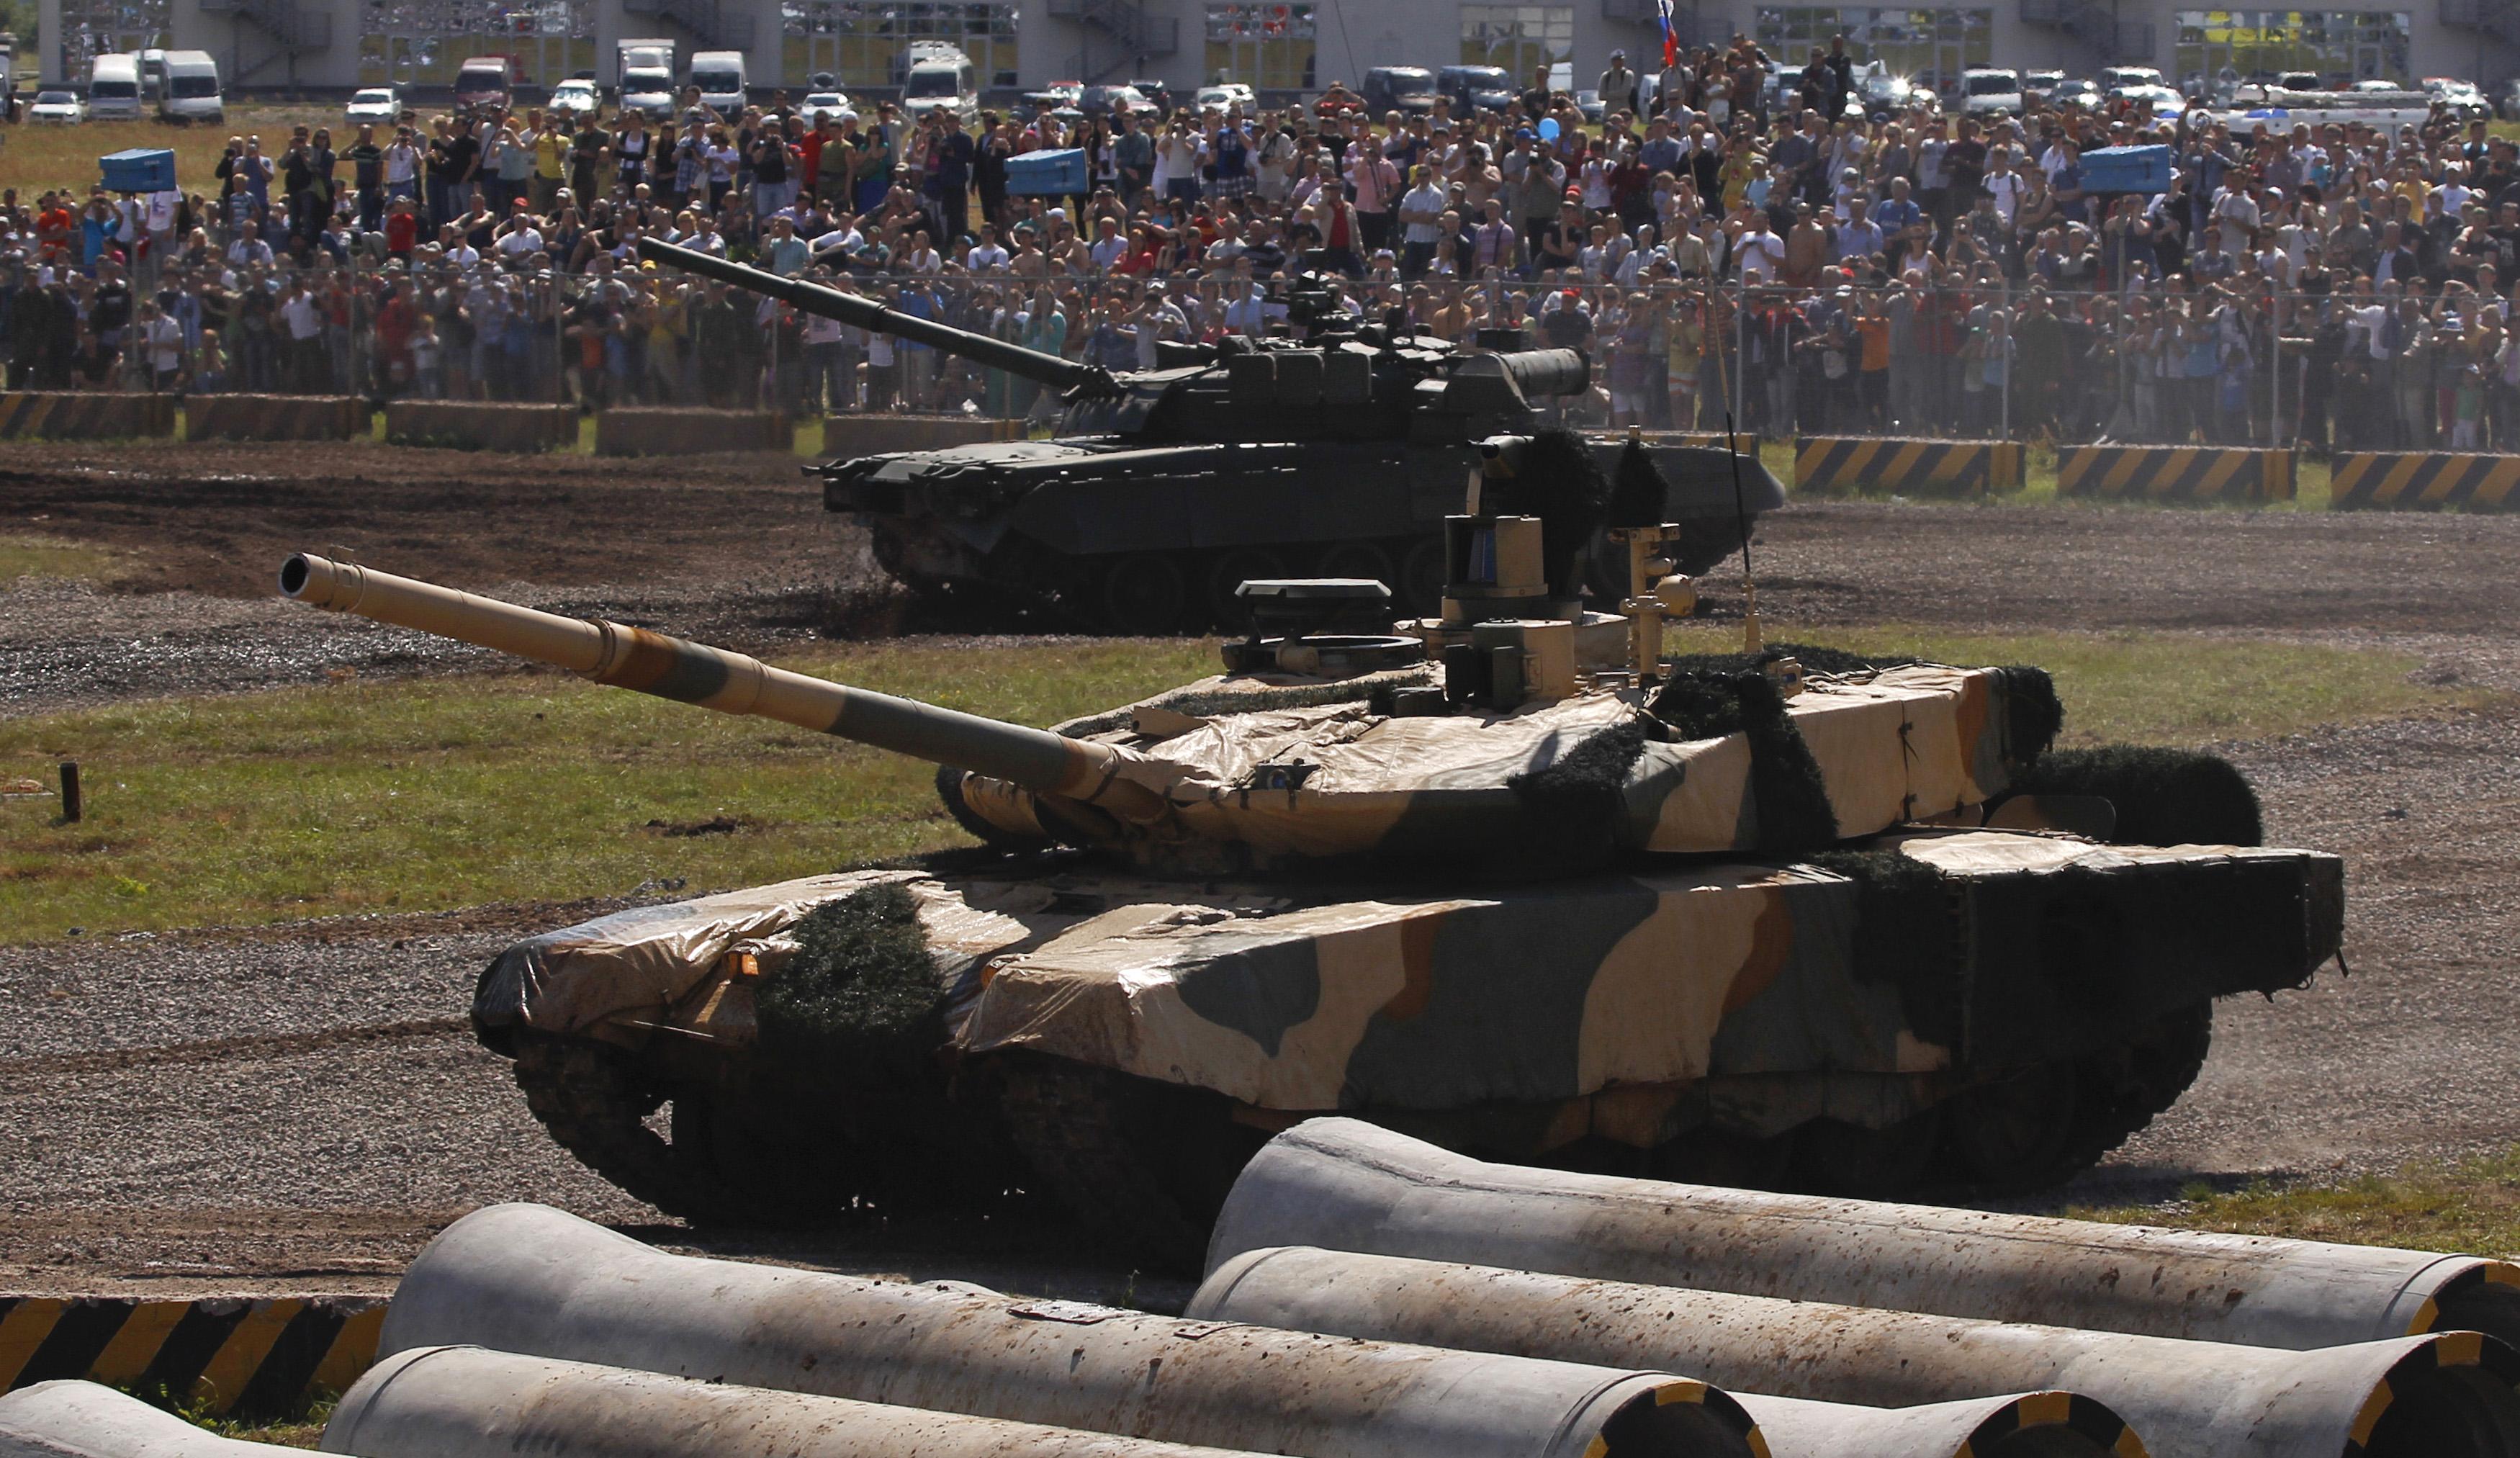 Au premier plan, un char T-90M et à l'arrière-plan, un char T-90, photographiés sur un terrain de tir lors d'une démonstration, à Joukovski, près de Moscou, le 30 juin 2012 (image d'illustration). [REUTERS - Maxim Shemetov]